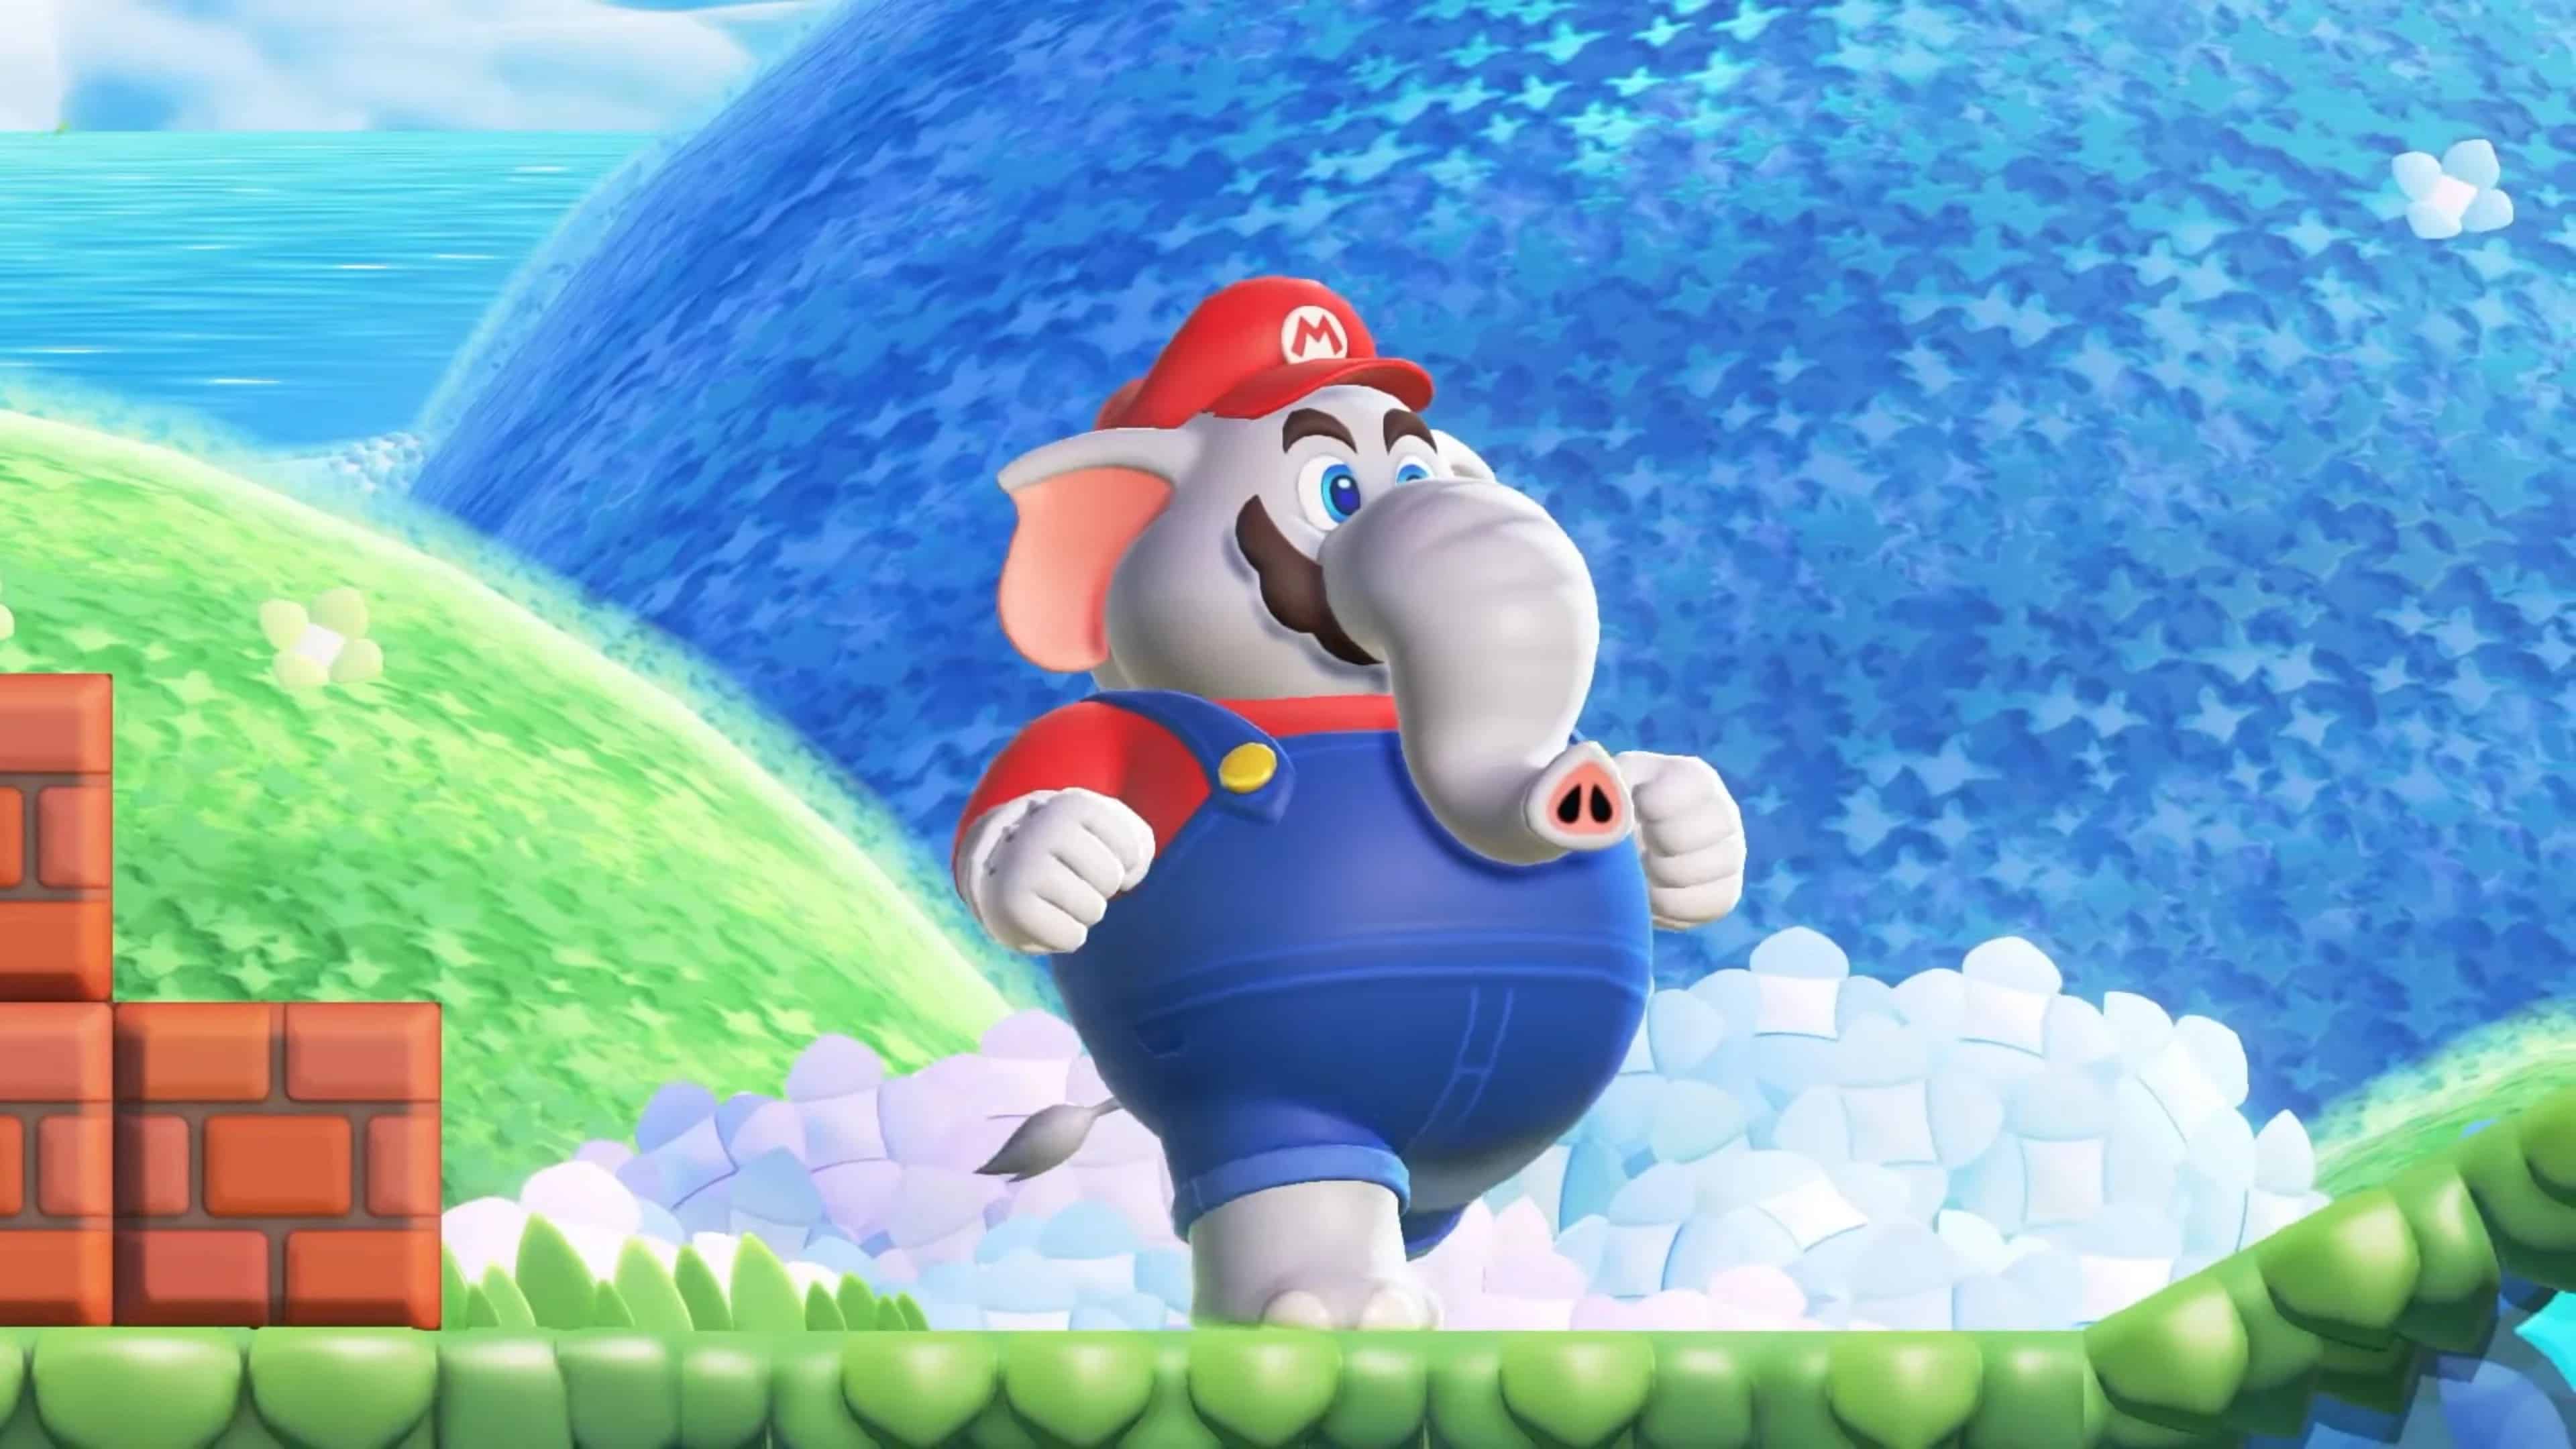 Super Mario Bros. Wonder - Release Date, Gameplay Details